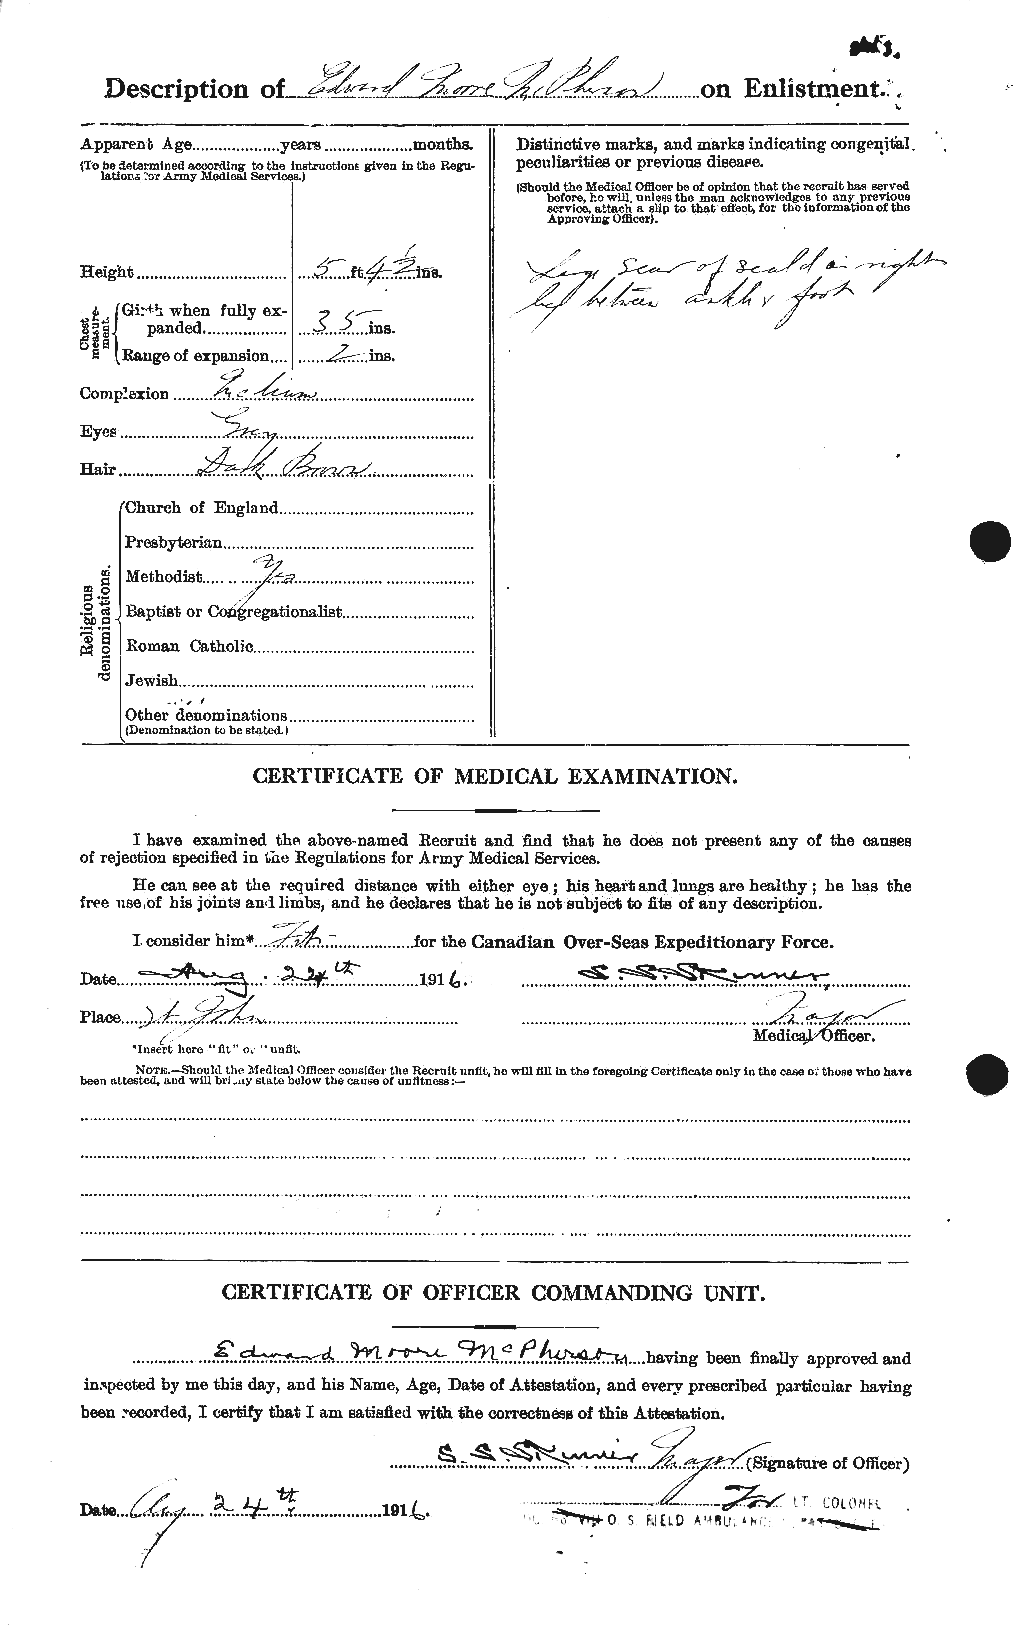 Dossiers du Personnel de la Première Guerre mondiale - CEC 541520b